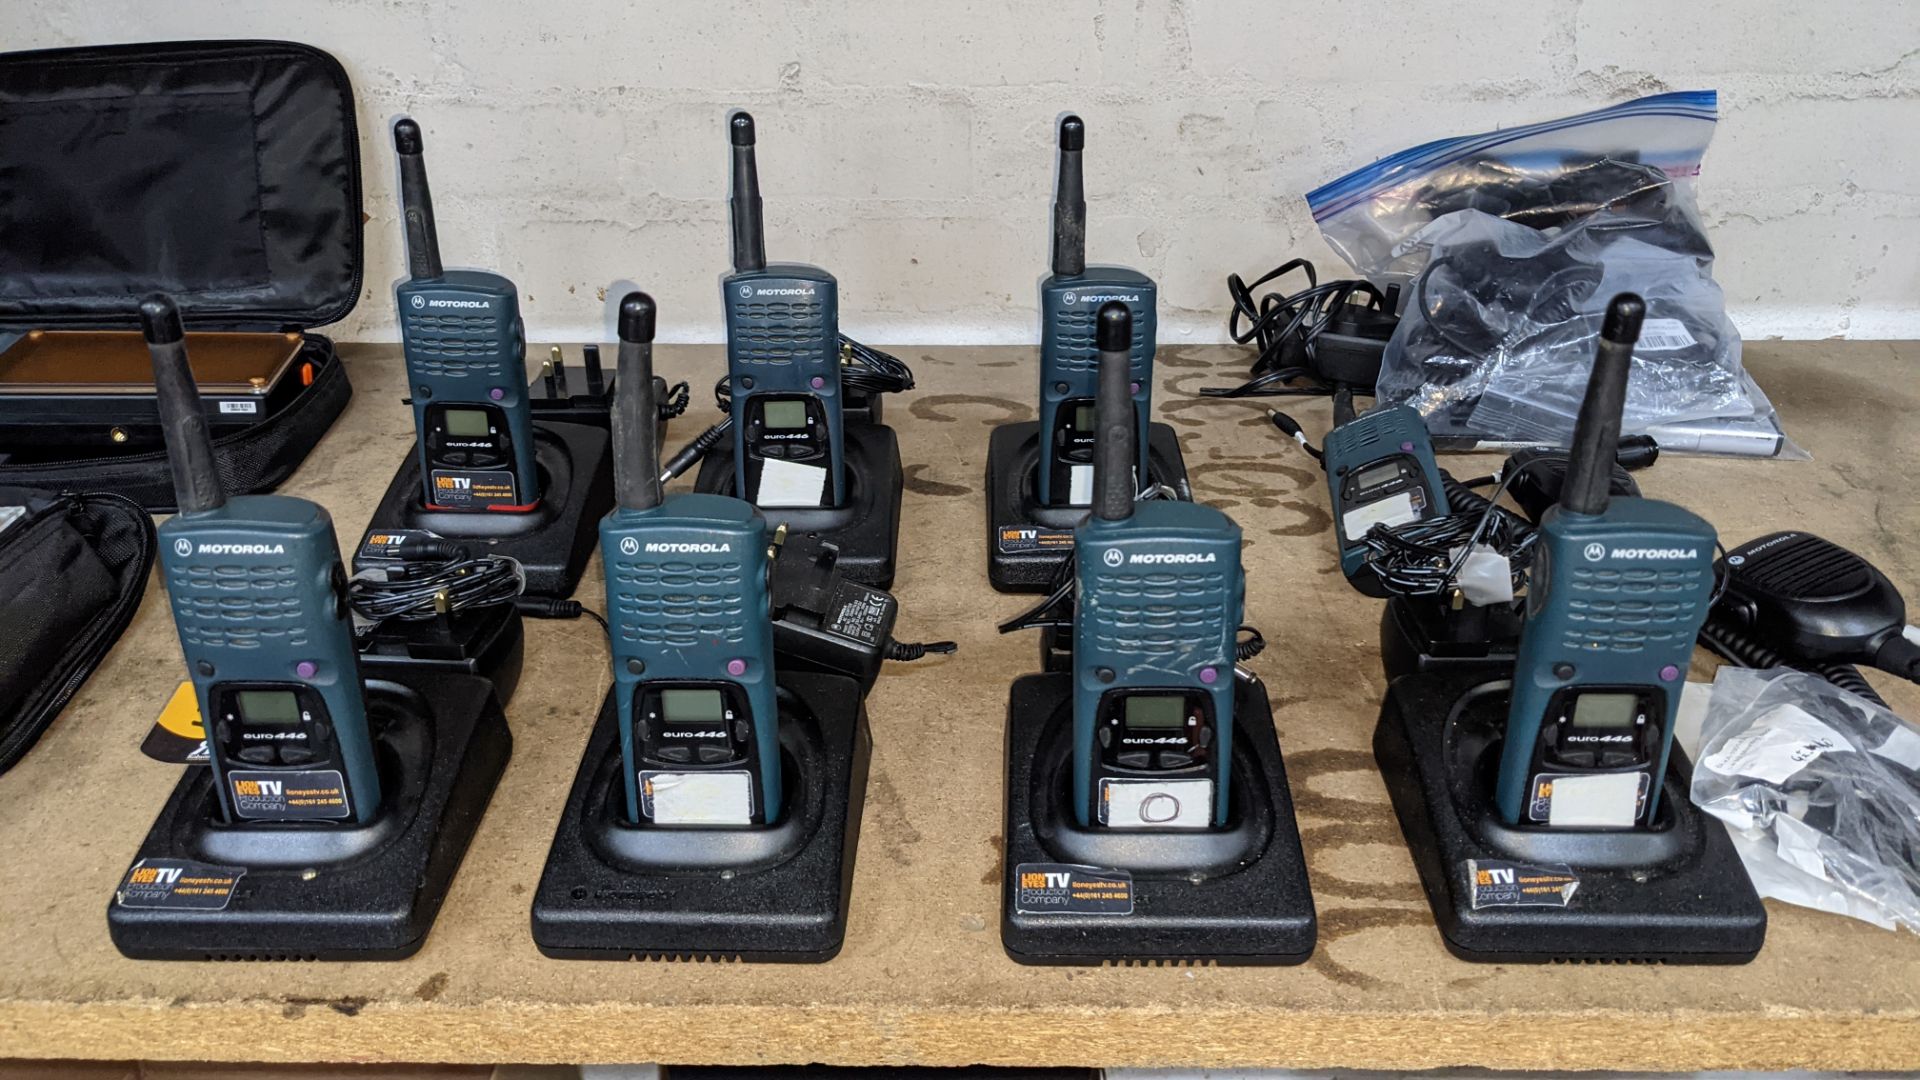 8 off Motorola walkie-talkies, model Euro 446 plus 7 base stations, 6 power packs, 2 hand-held wired - Image 3 of 9